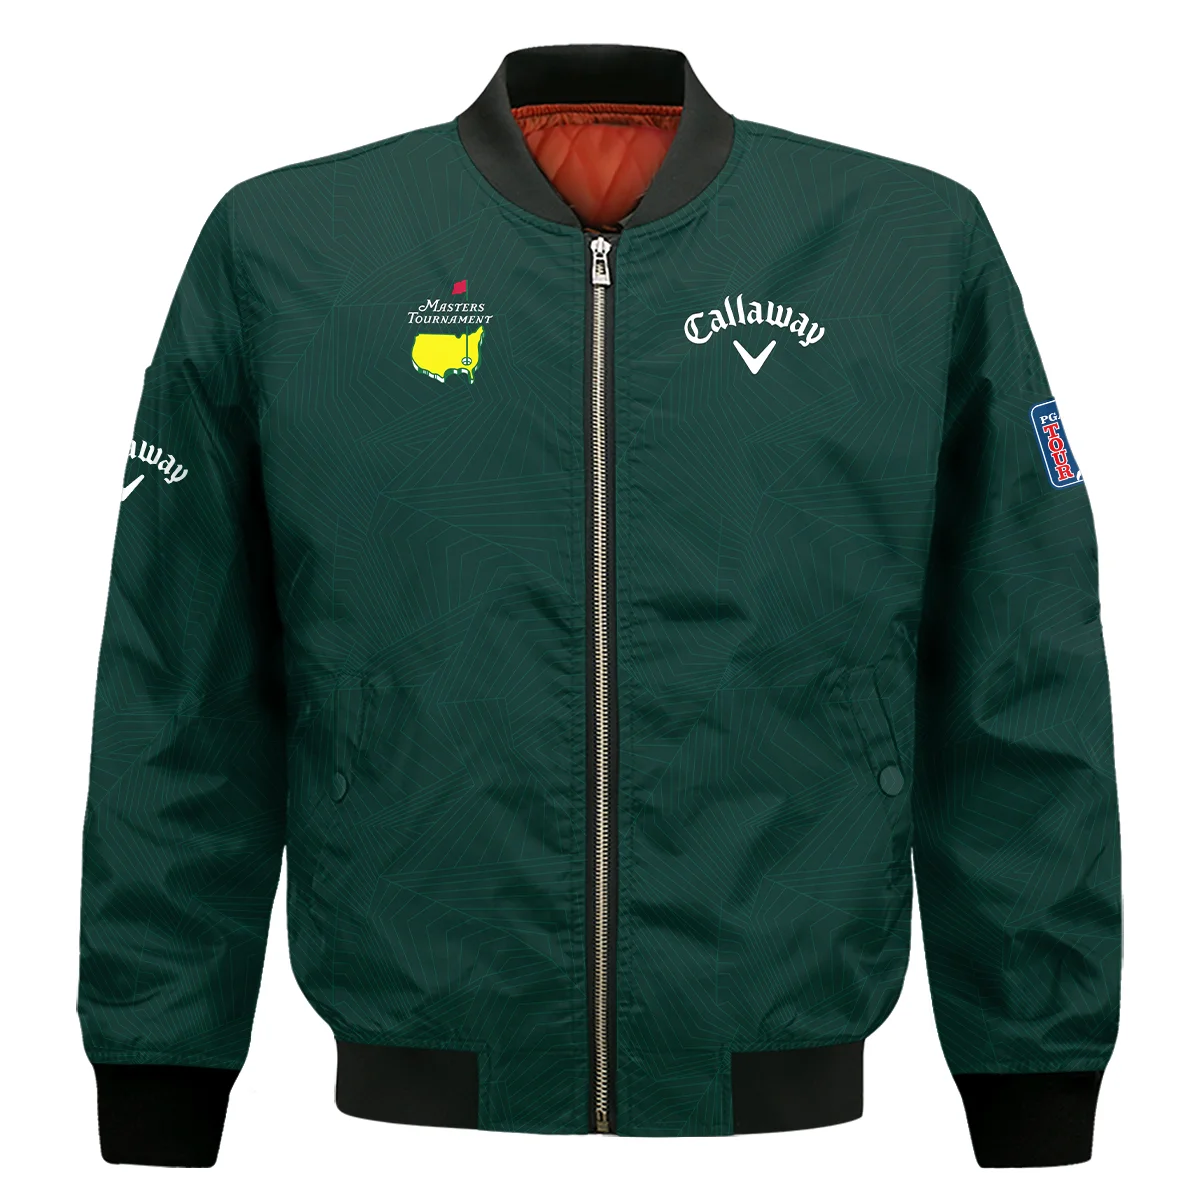 Masters Tournament Callaway Pattern Sport Jersey Dark Green Zipper Hoodie Shirt Style Classic Zipper Hoodie Shirt